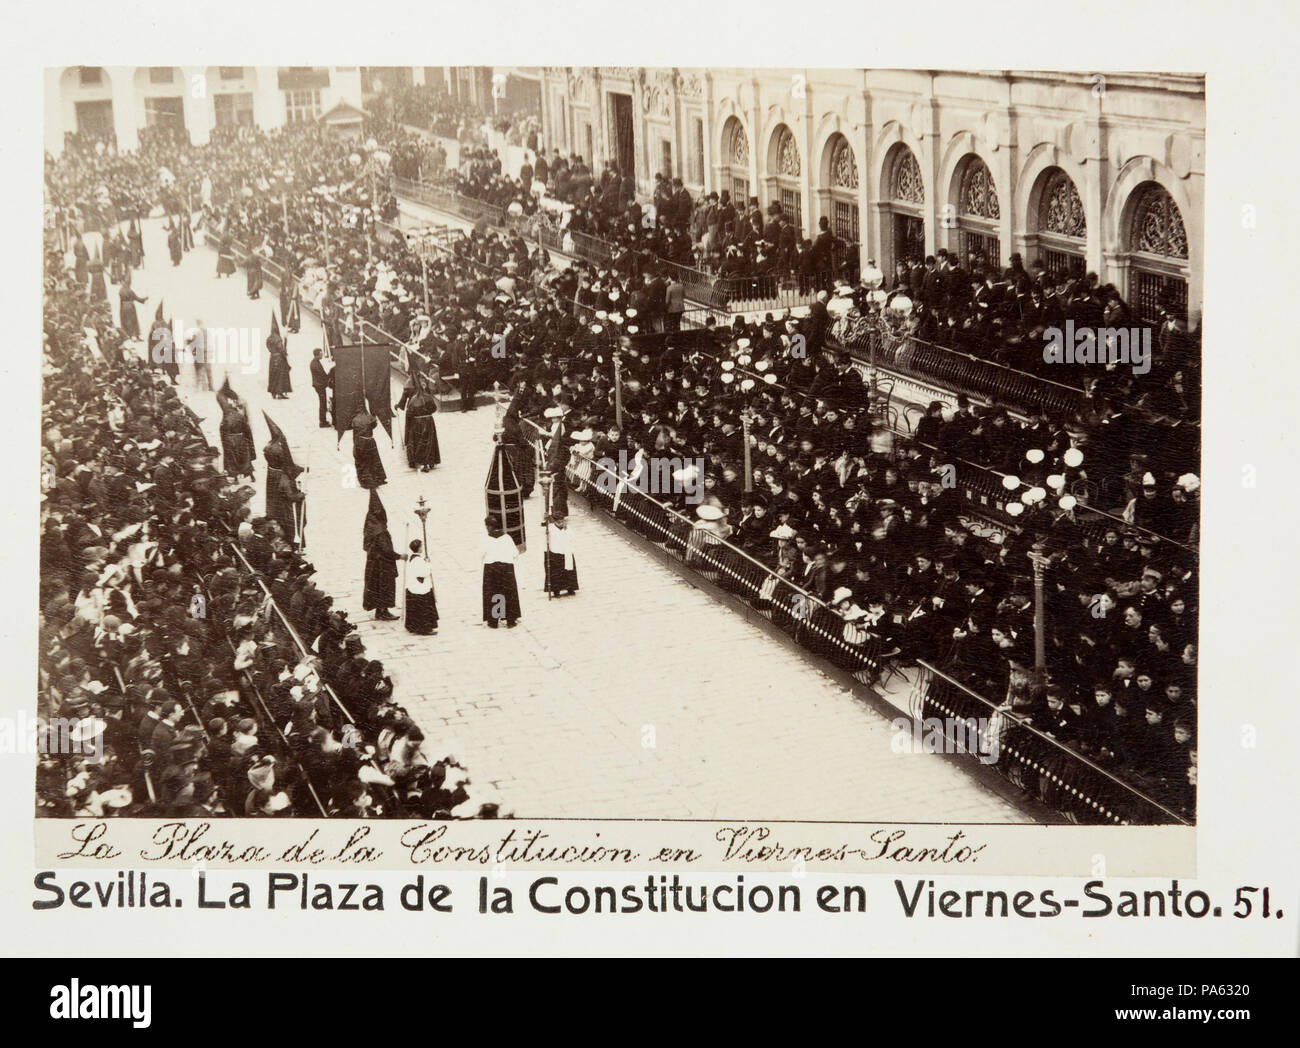 88 Fotografi av Sevilla. La Plaza de la Constitucion en Viernes-Santo - Hallwylska museet - 104798 Stock Photo